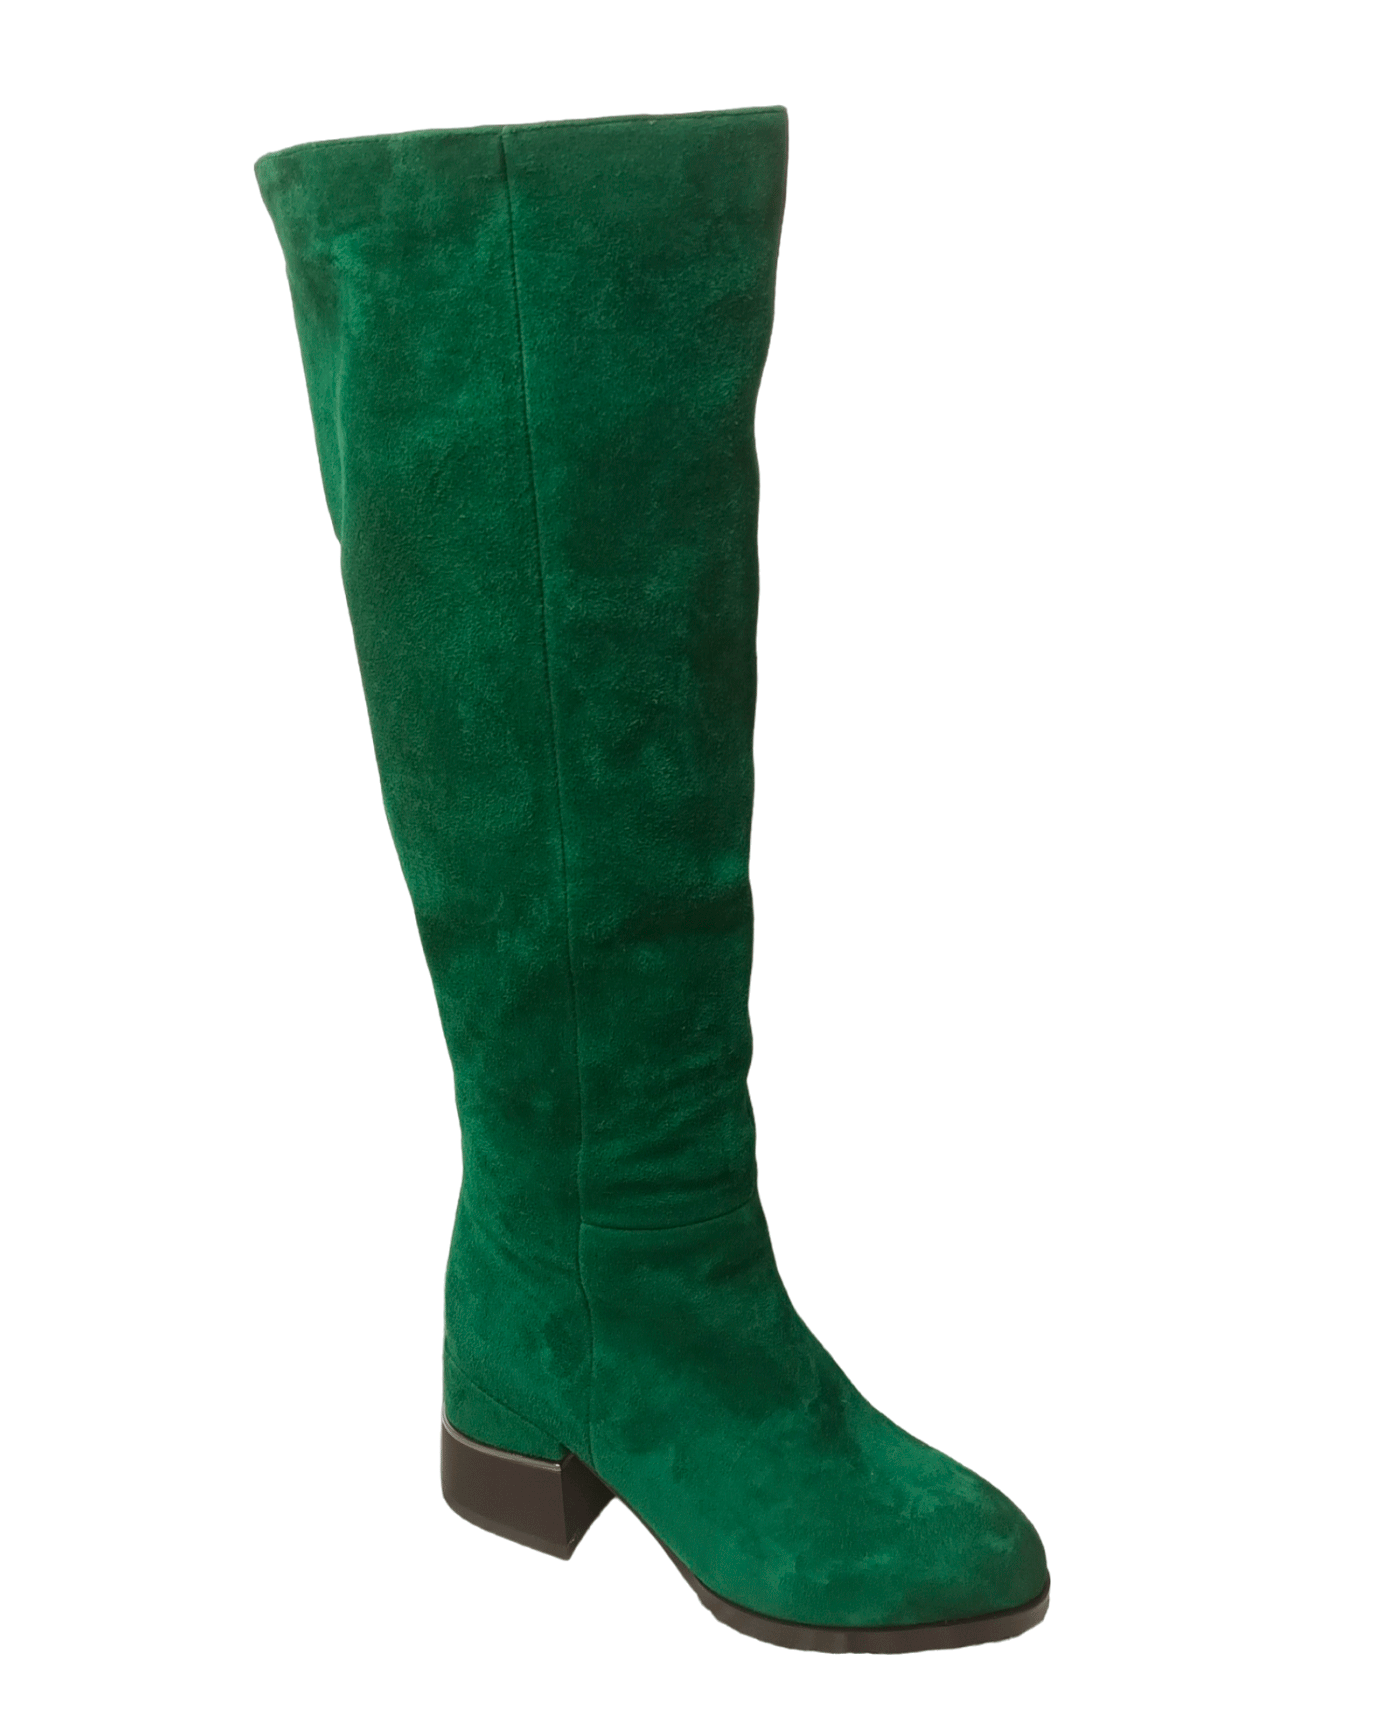 Сапоги женские зимние замшевые зеленые Z232-8